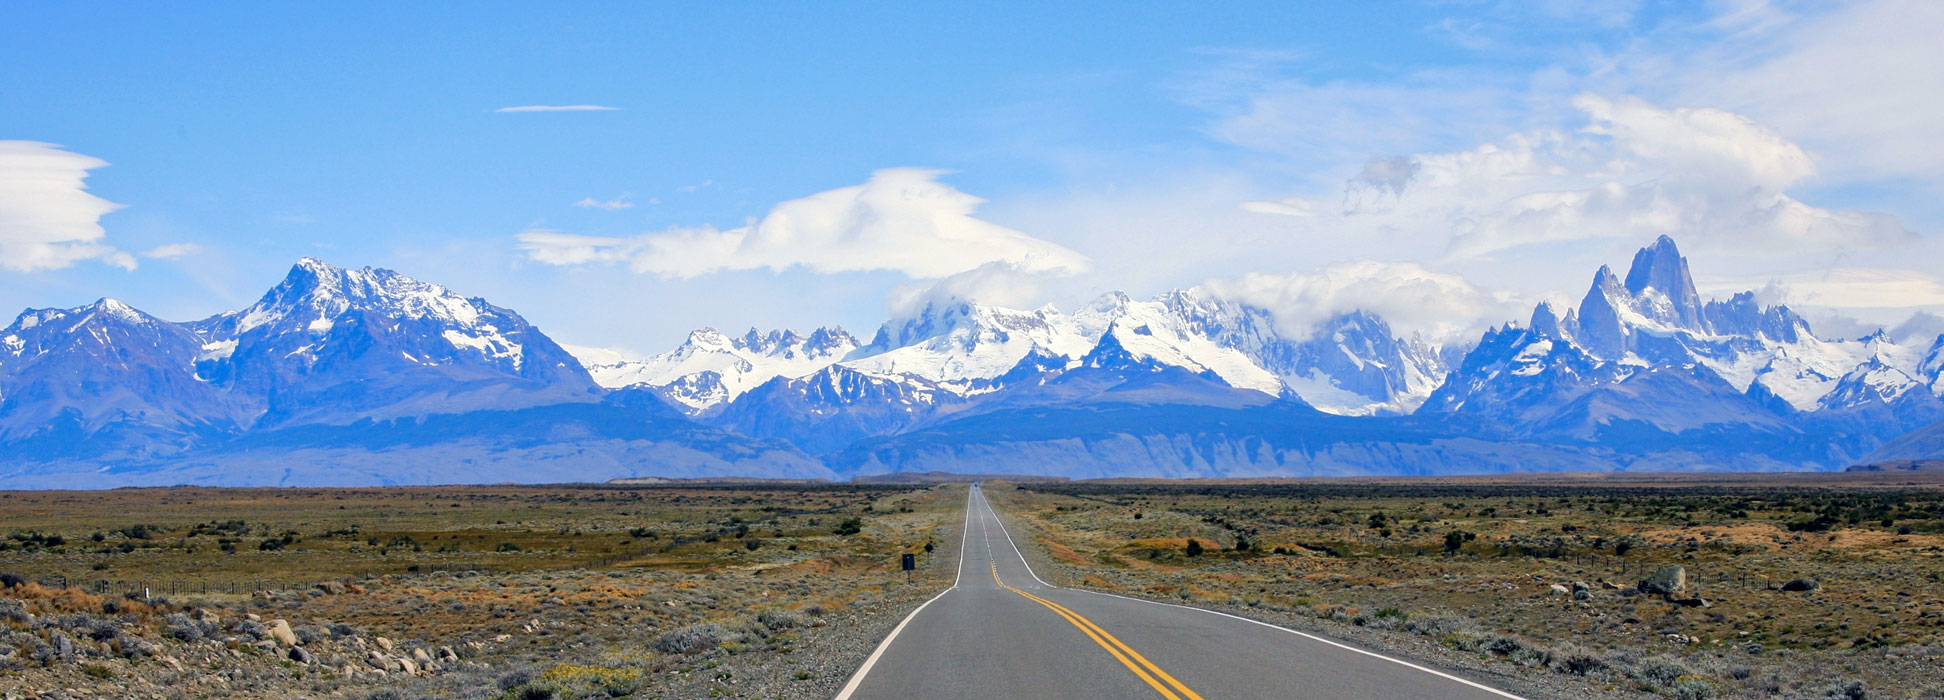 The road to El Chaltén, a village within Los Glaciares National Park in Argentina's Santa Cruz province